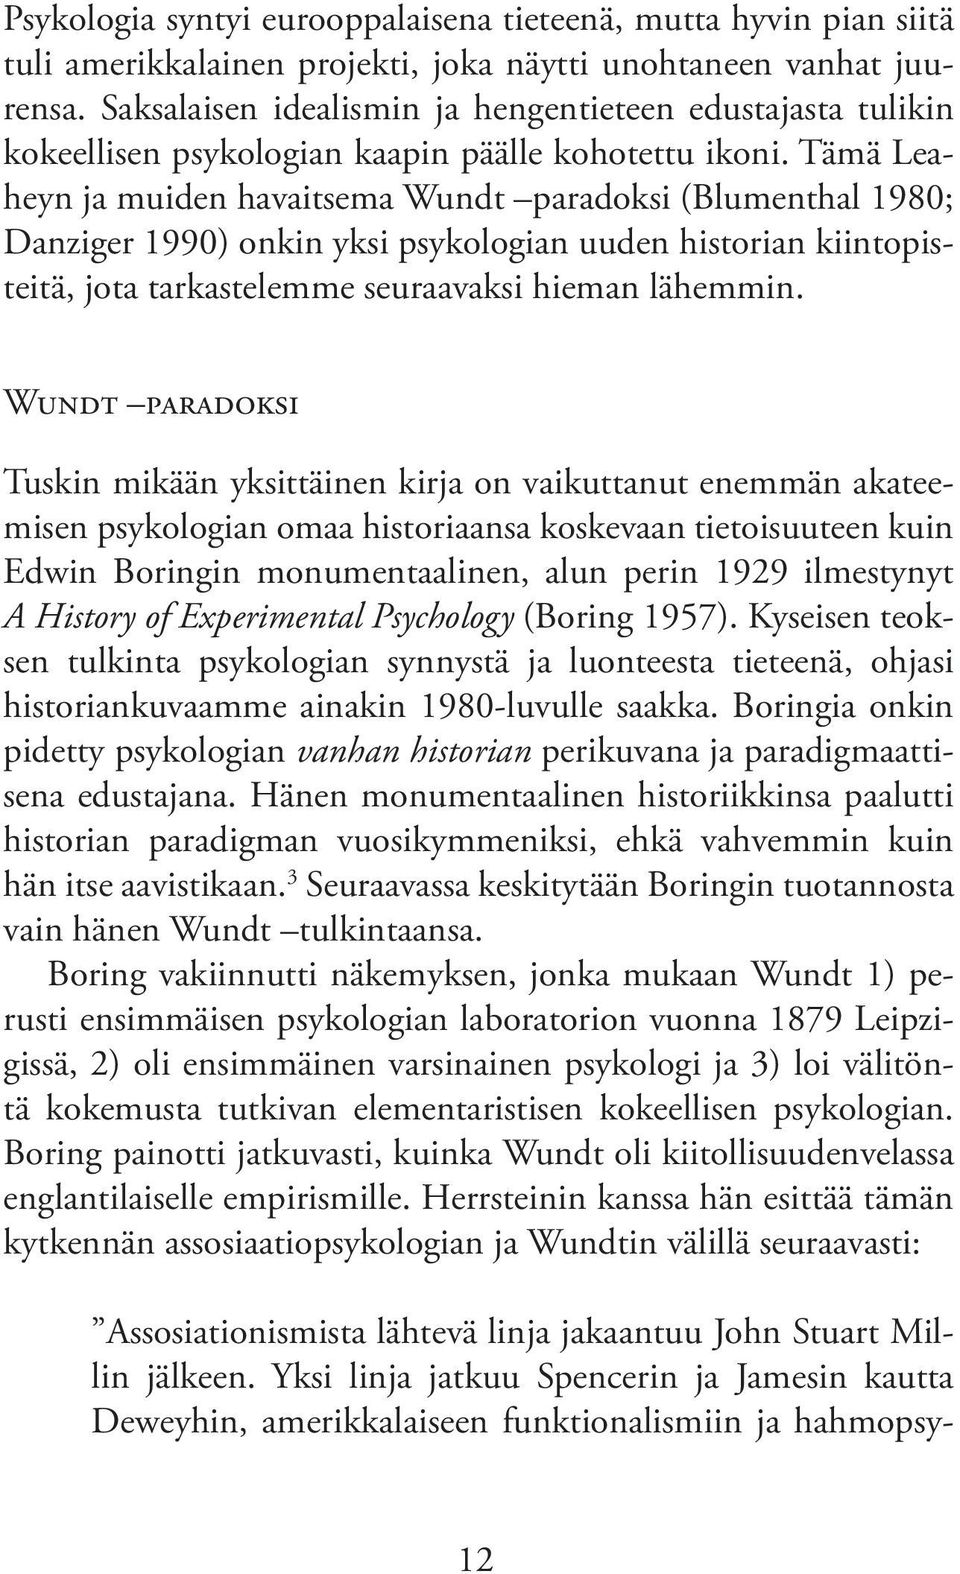 Tämä Leaheyn ja muiden havaitsema Wundt paradoksi (Blumenthal 1980; Danziger 1990) onkin yksi psykologian uuden historian kiintopisteitä, jota tarkastelemme seuraavaksi hieman lähemmin.